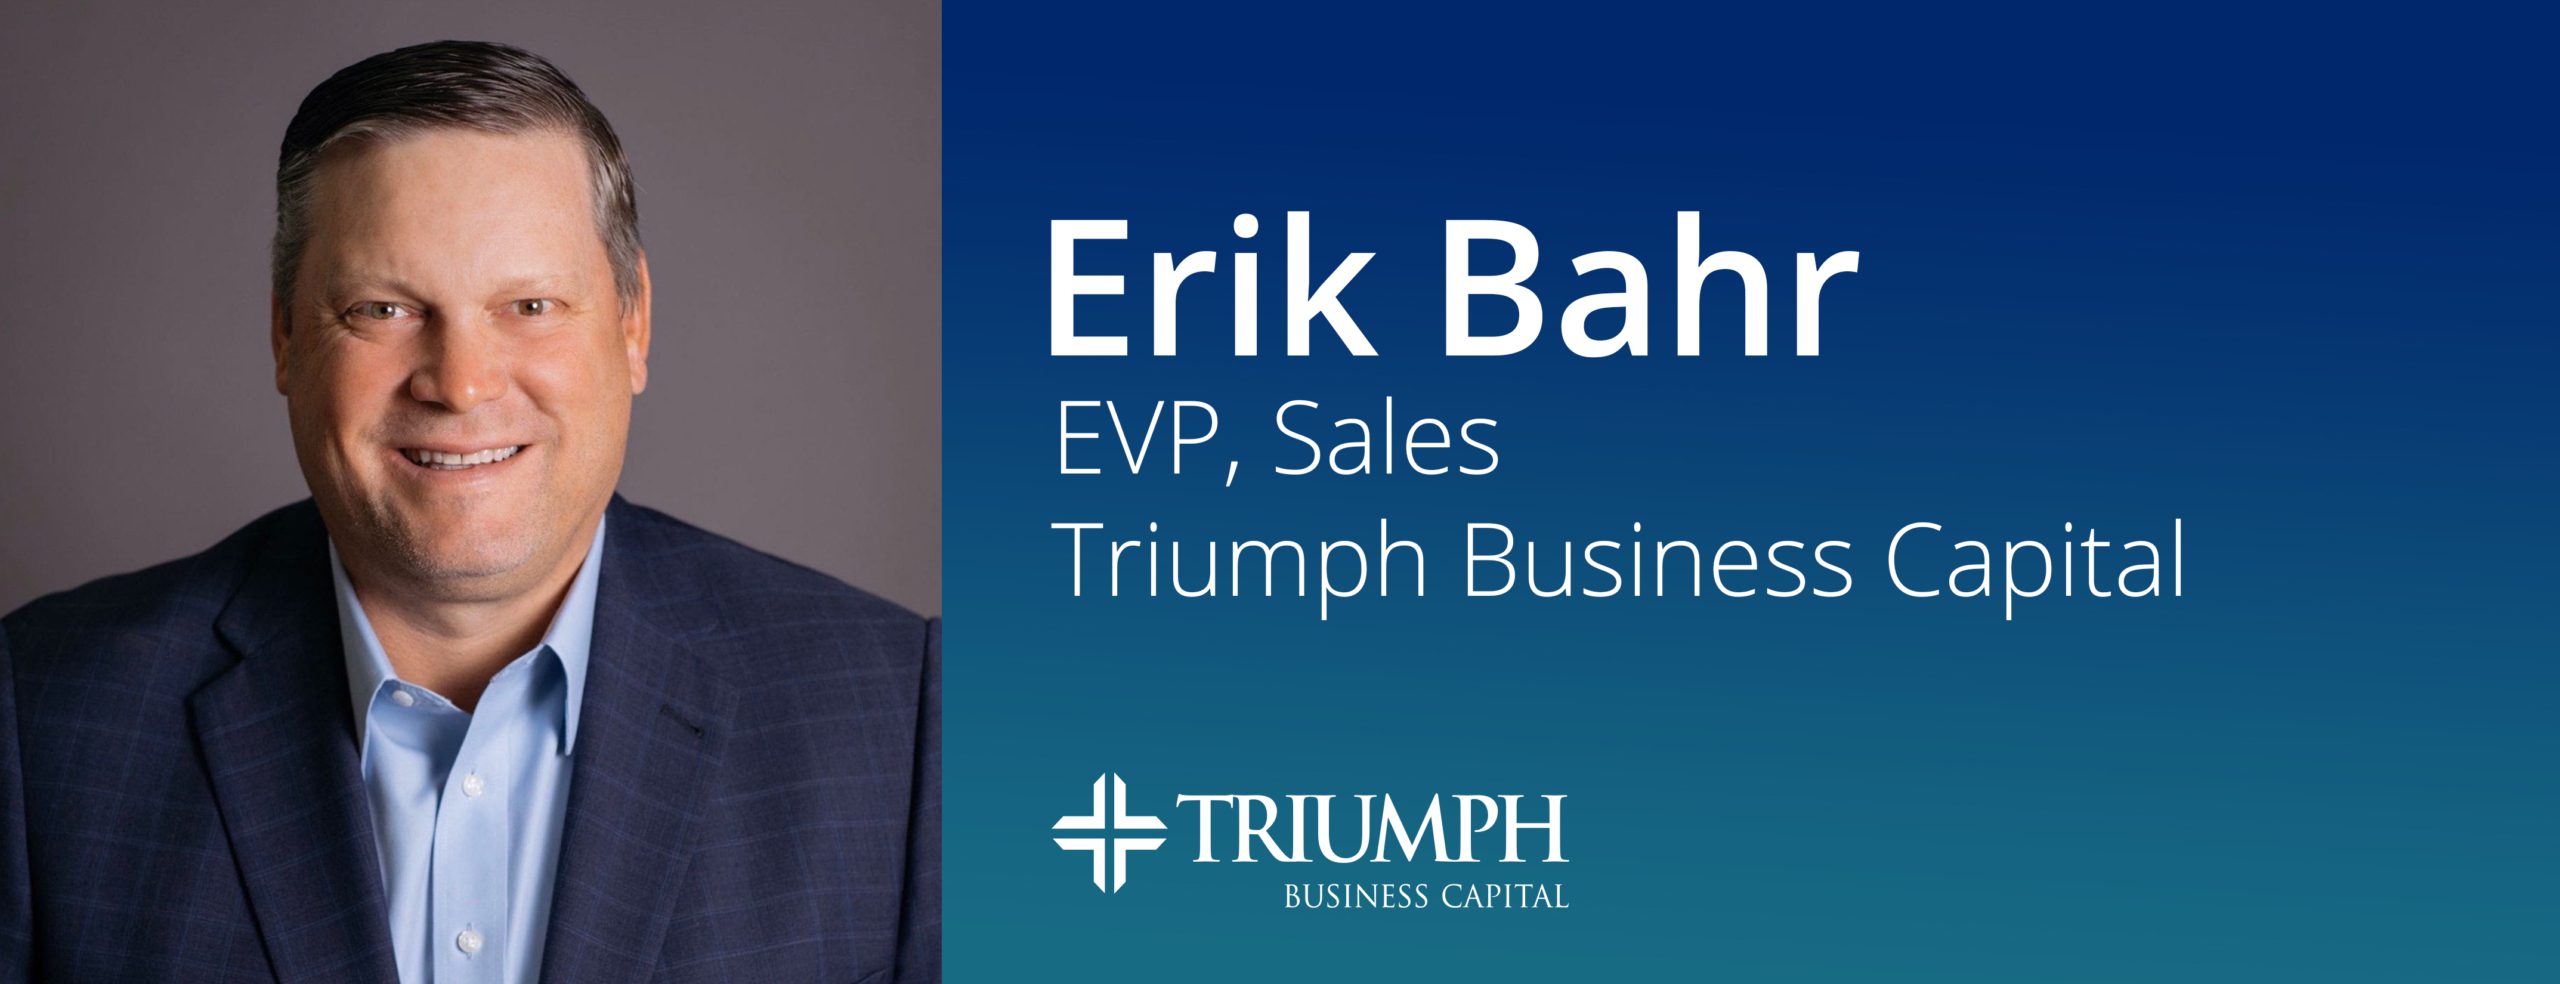 Image for Triumph Business Capital Names Erik Bahr EVP of Sales